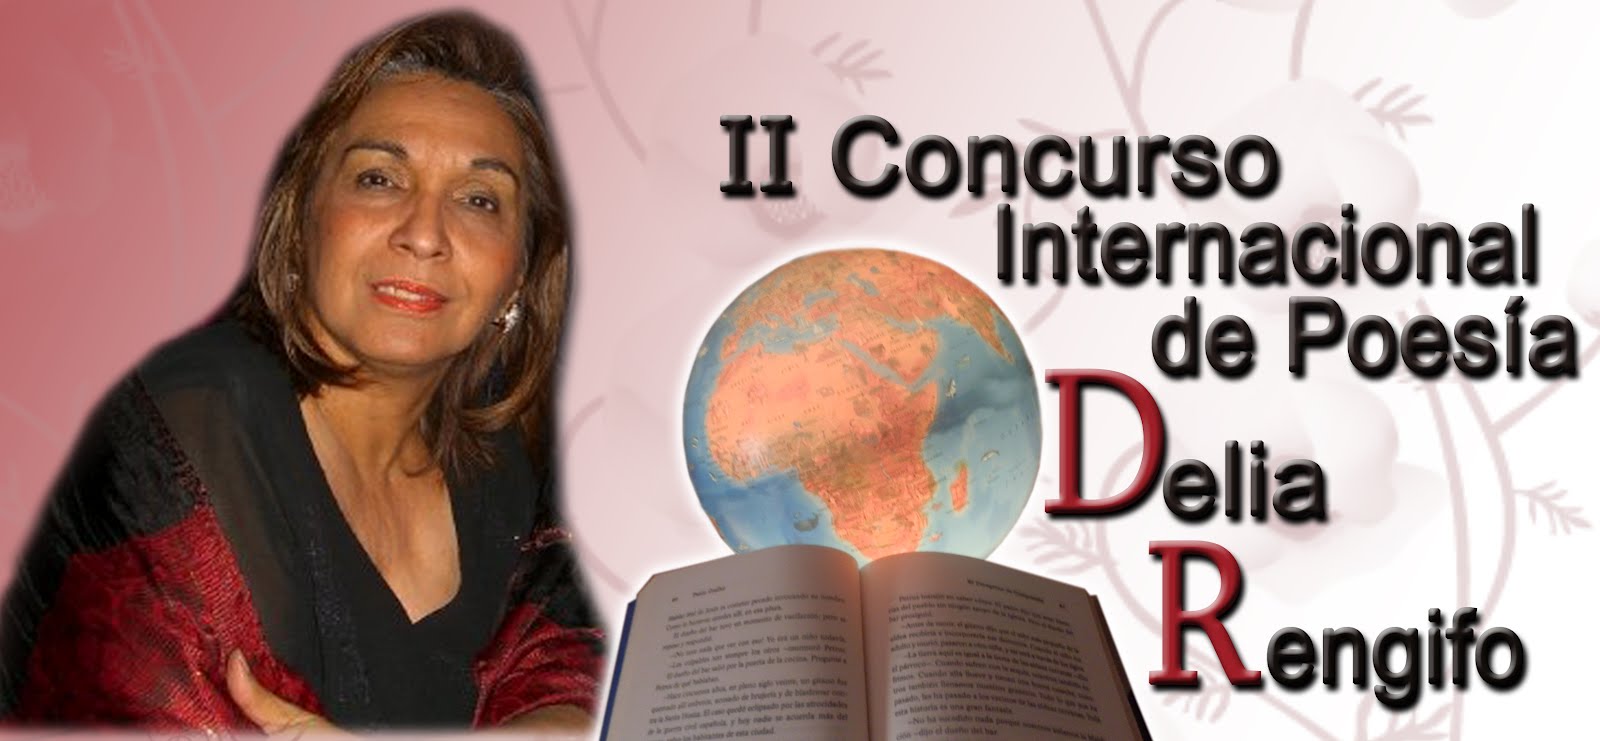 - II Concurso Internacional de Poesía Delia Rengifo